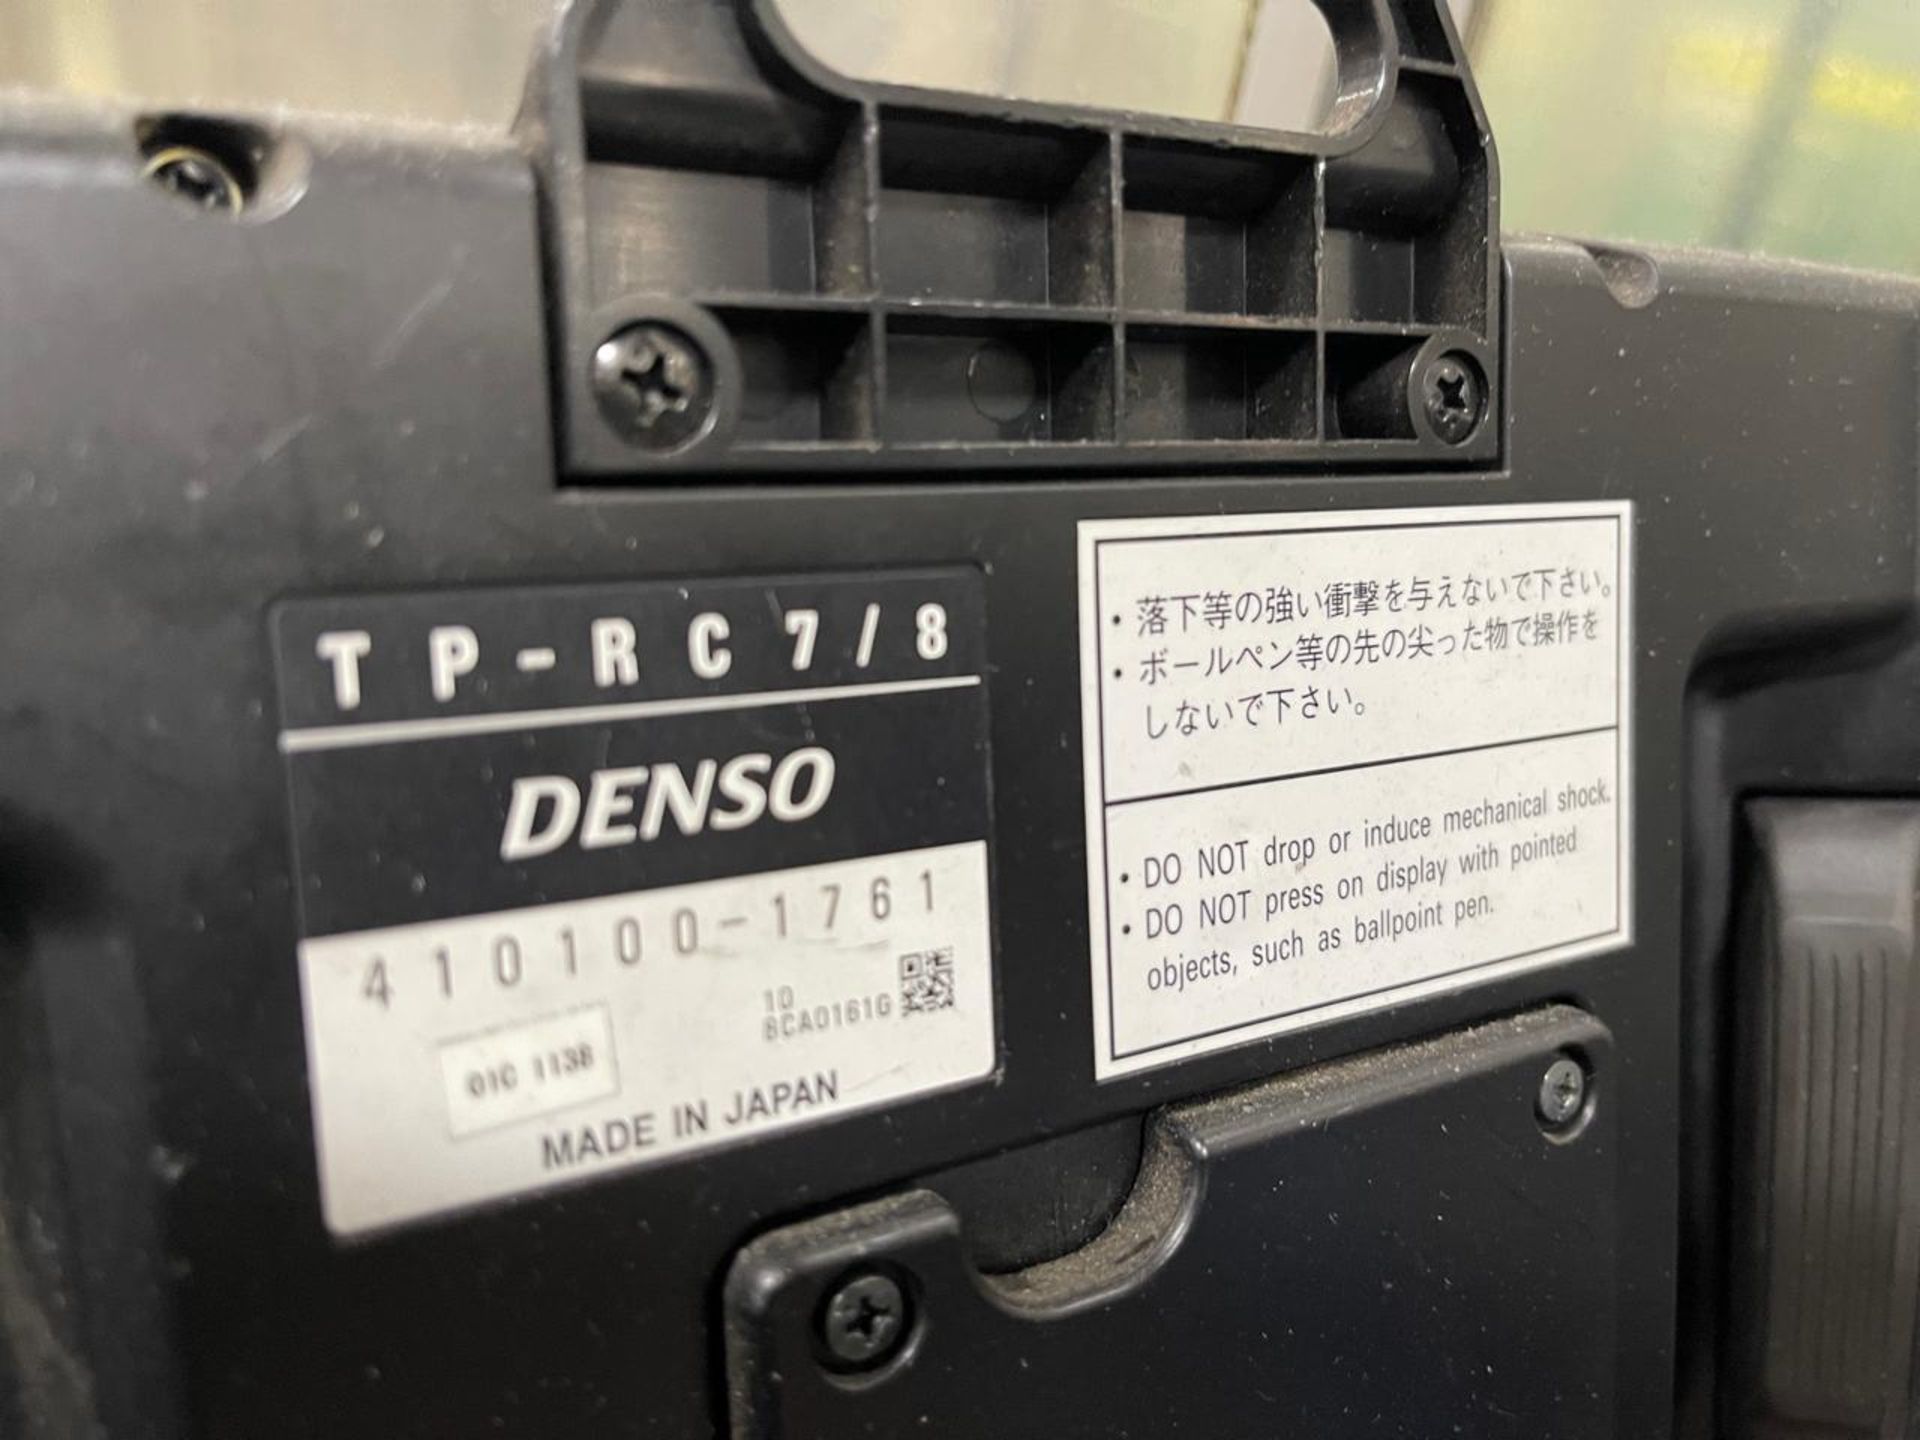 2012 Denso VS-6577GM-UL Robot - Image 6 of 7